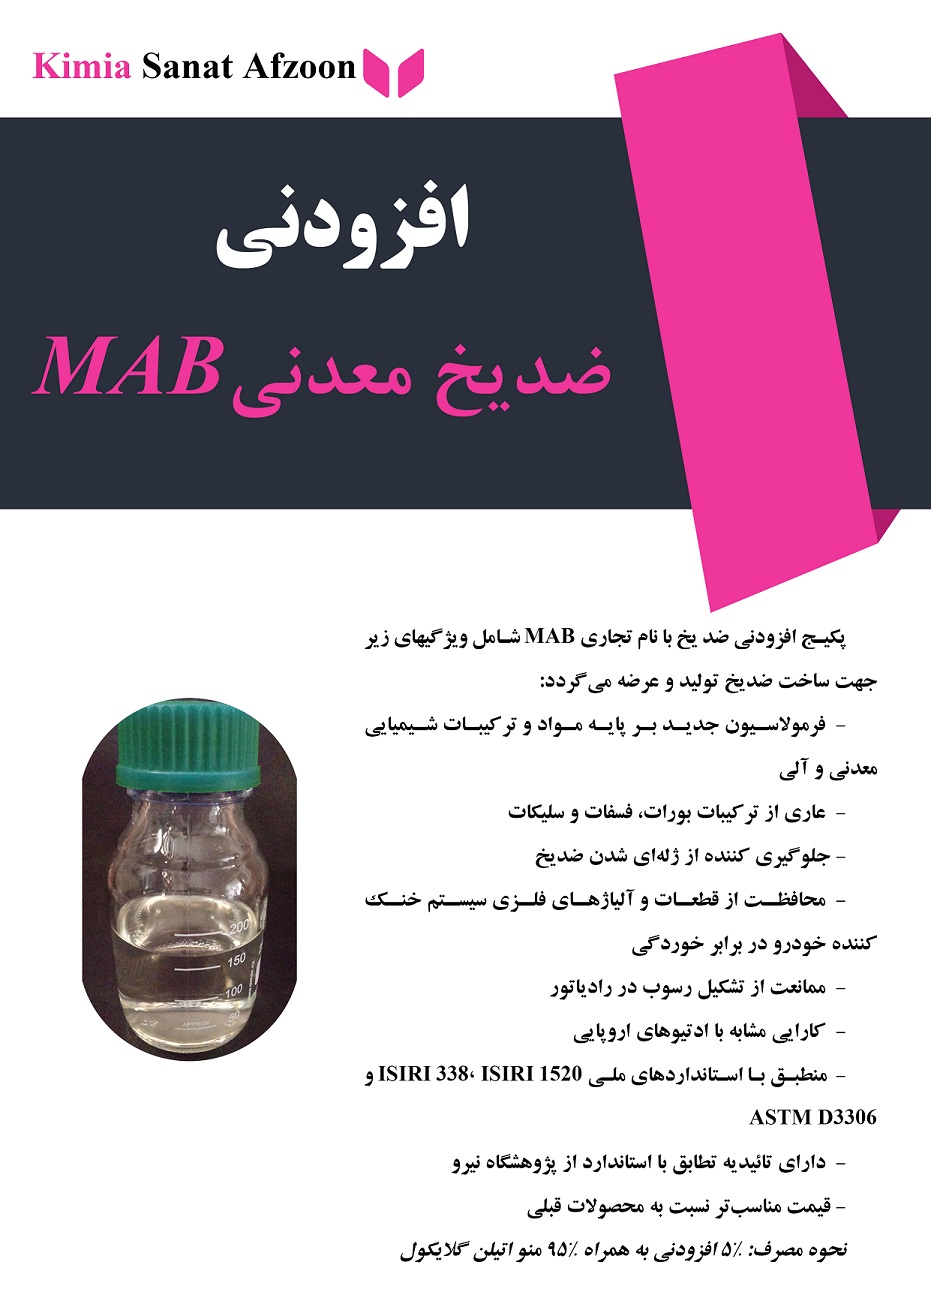  پکیج ادتیو معدنی ضدیخ (MAB Add)